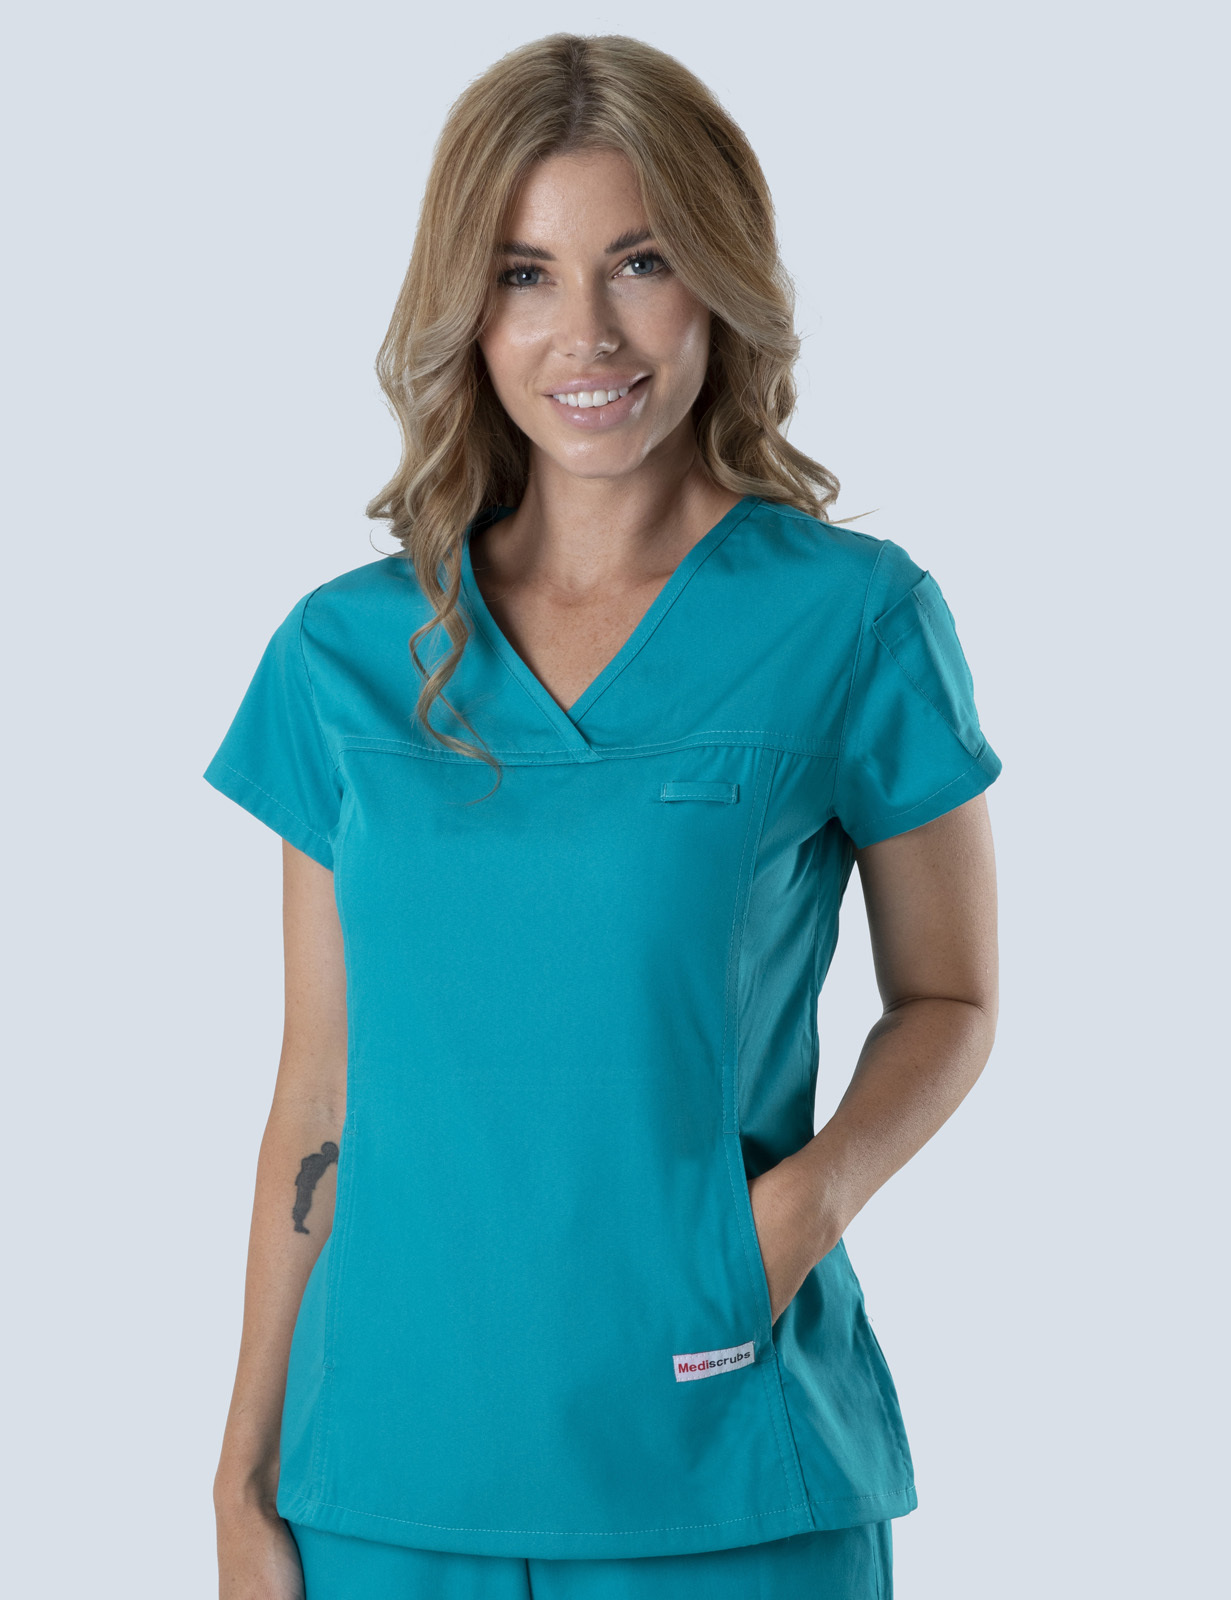 Queensland Children's Hospital Emergency Department Nurse Practitioner Uniform Top Bundle  (Women's Fit Top in Teal incl Logos)